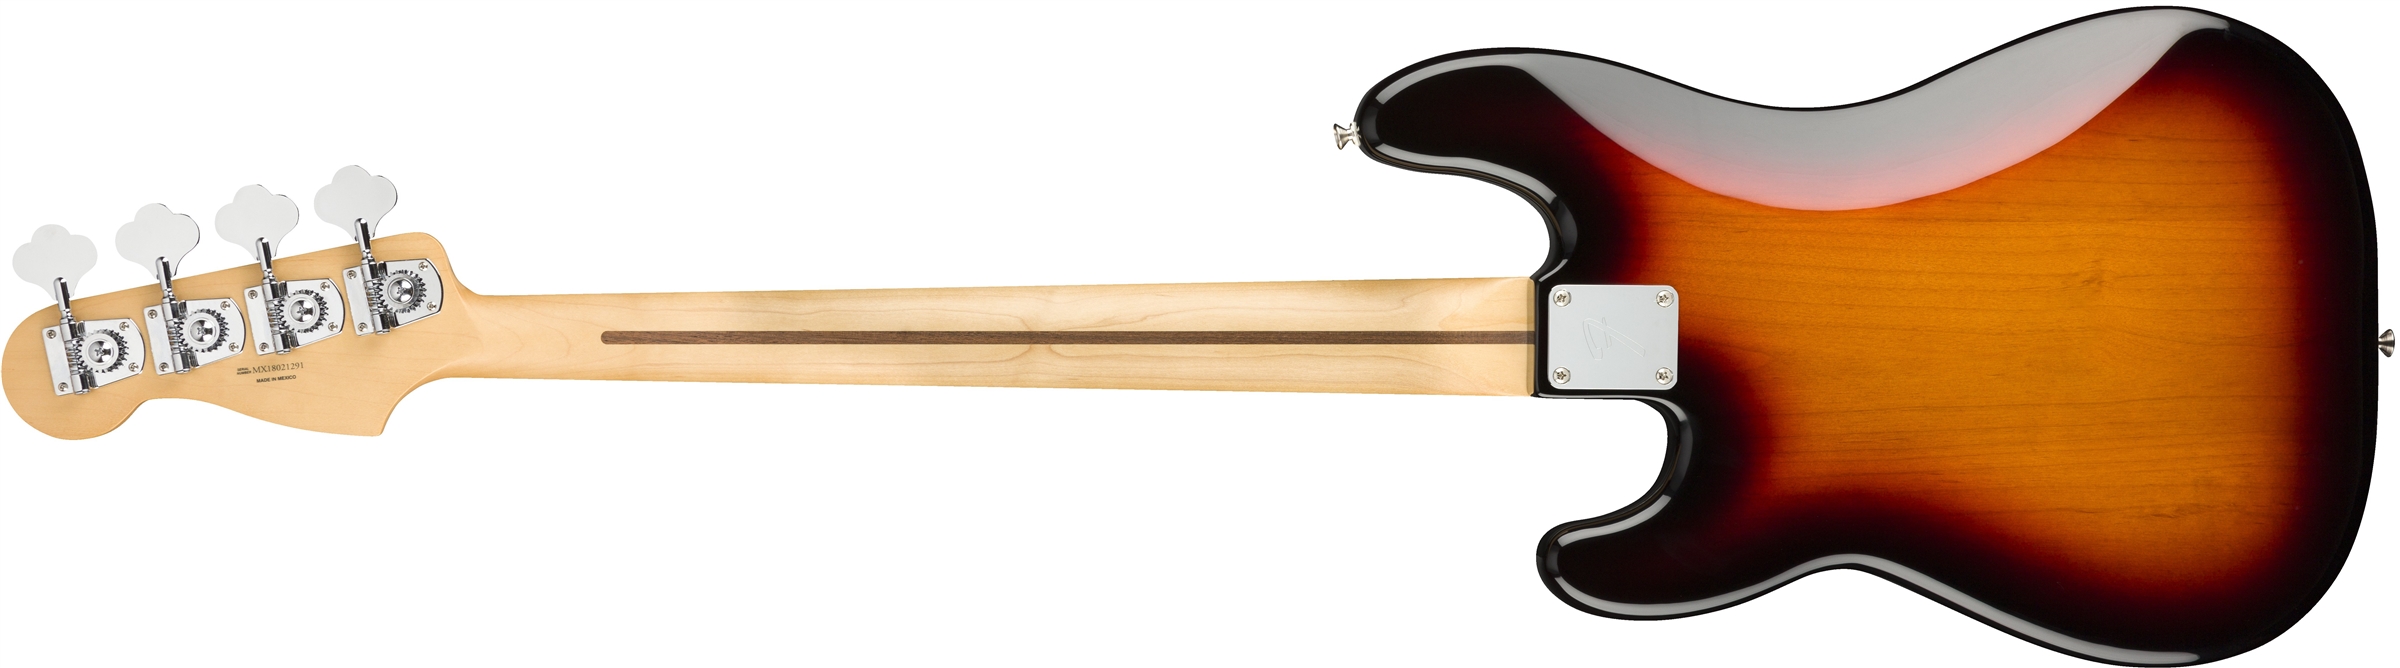 Fender Precision Bass Player Mex Mn - 3-color Sunburst - Bajo eléctrico de cuerpo sólido - Variation 1